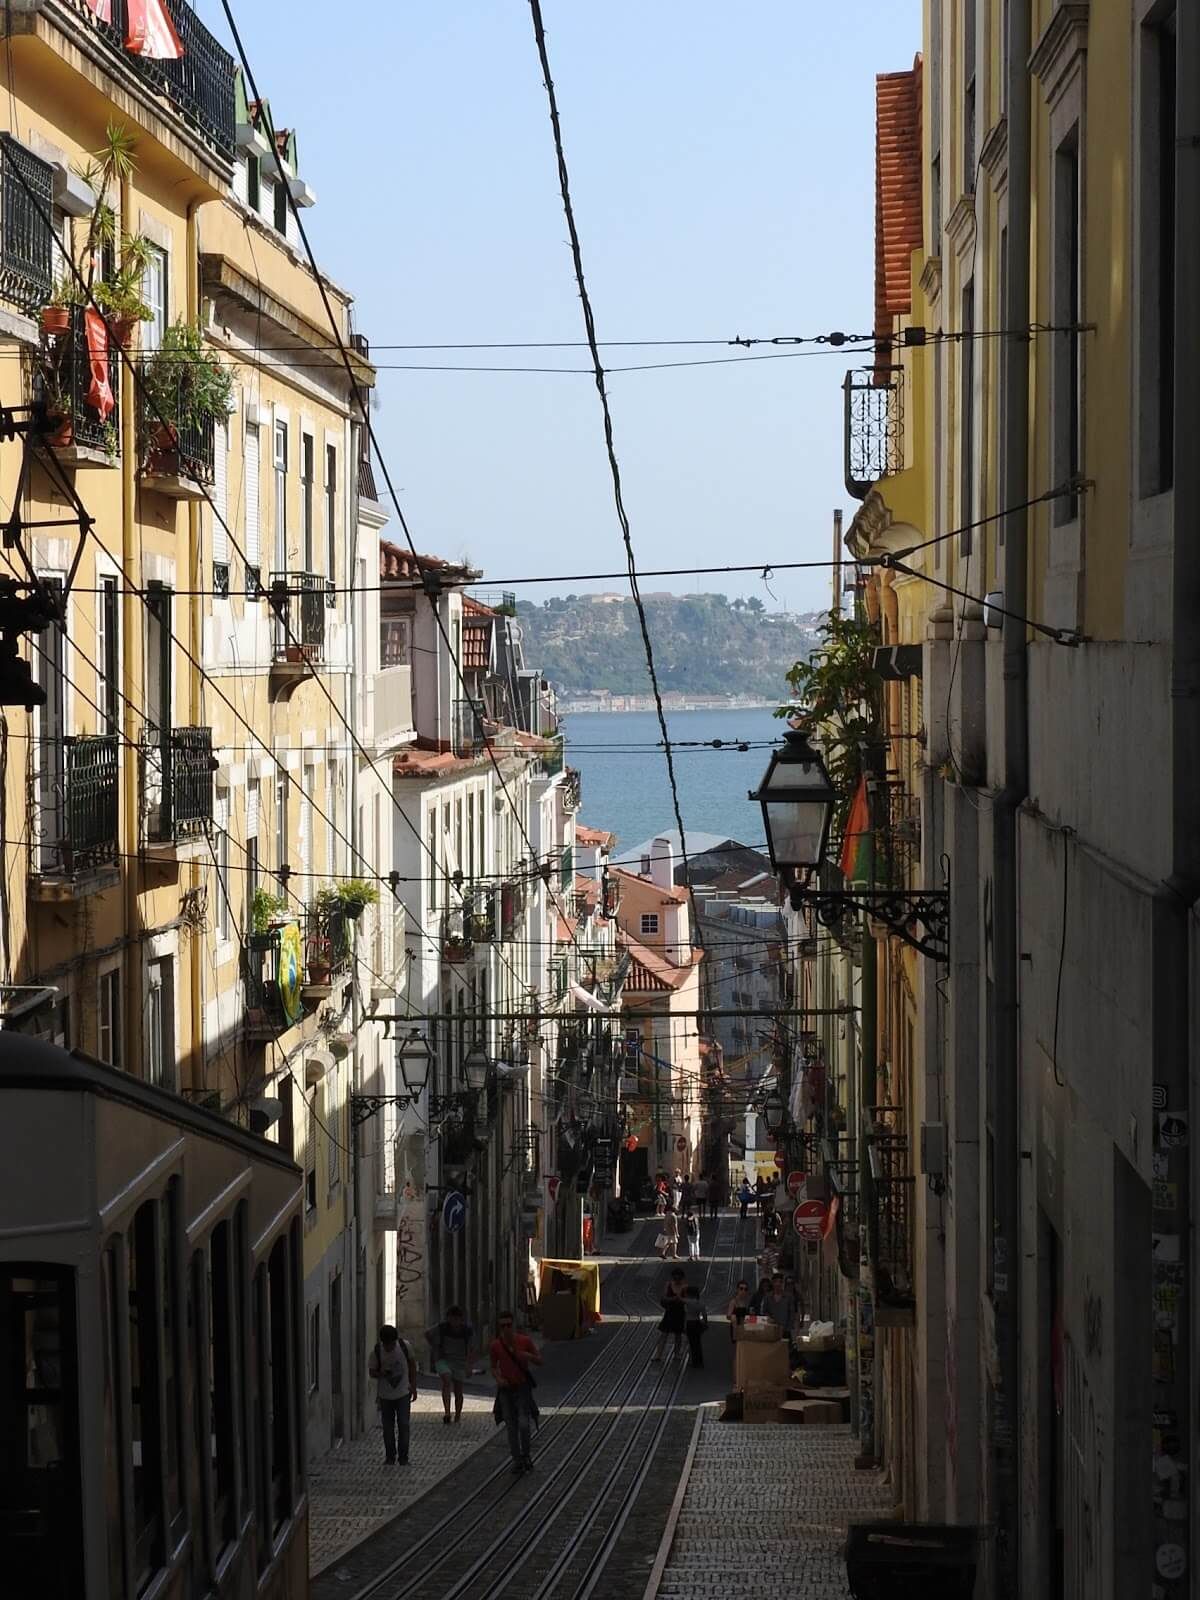 Centro histórico de Lisboa, que foi transformado nos últimos dez anos com a chegada do Airbnb.